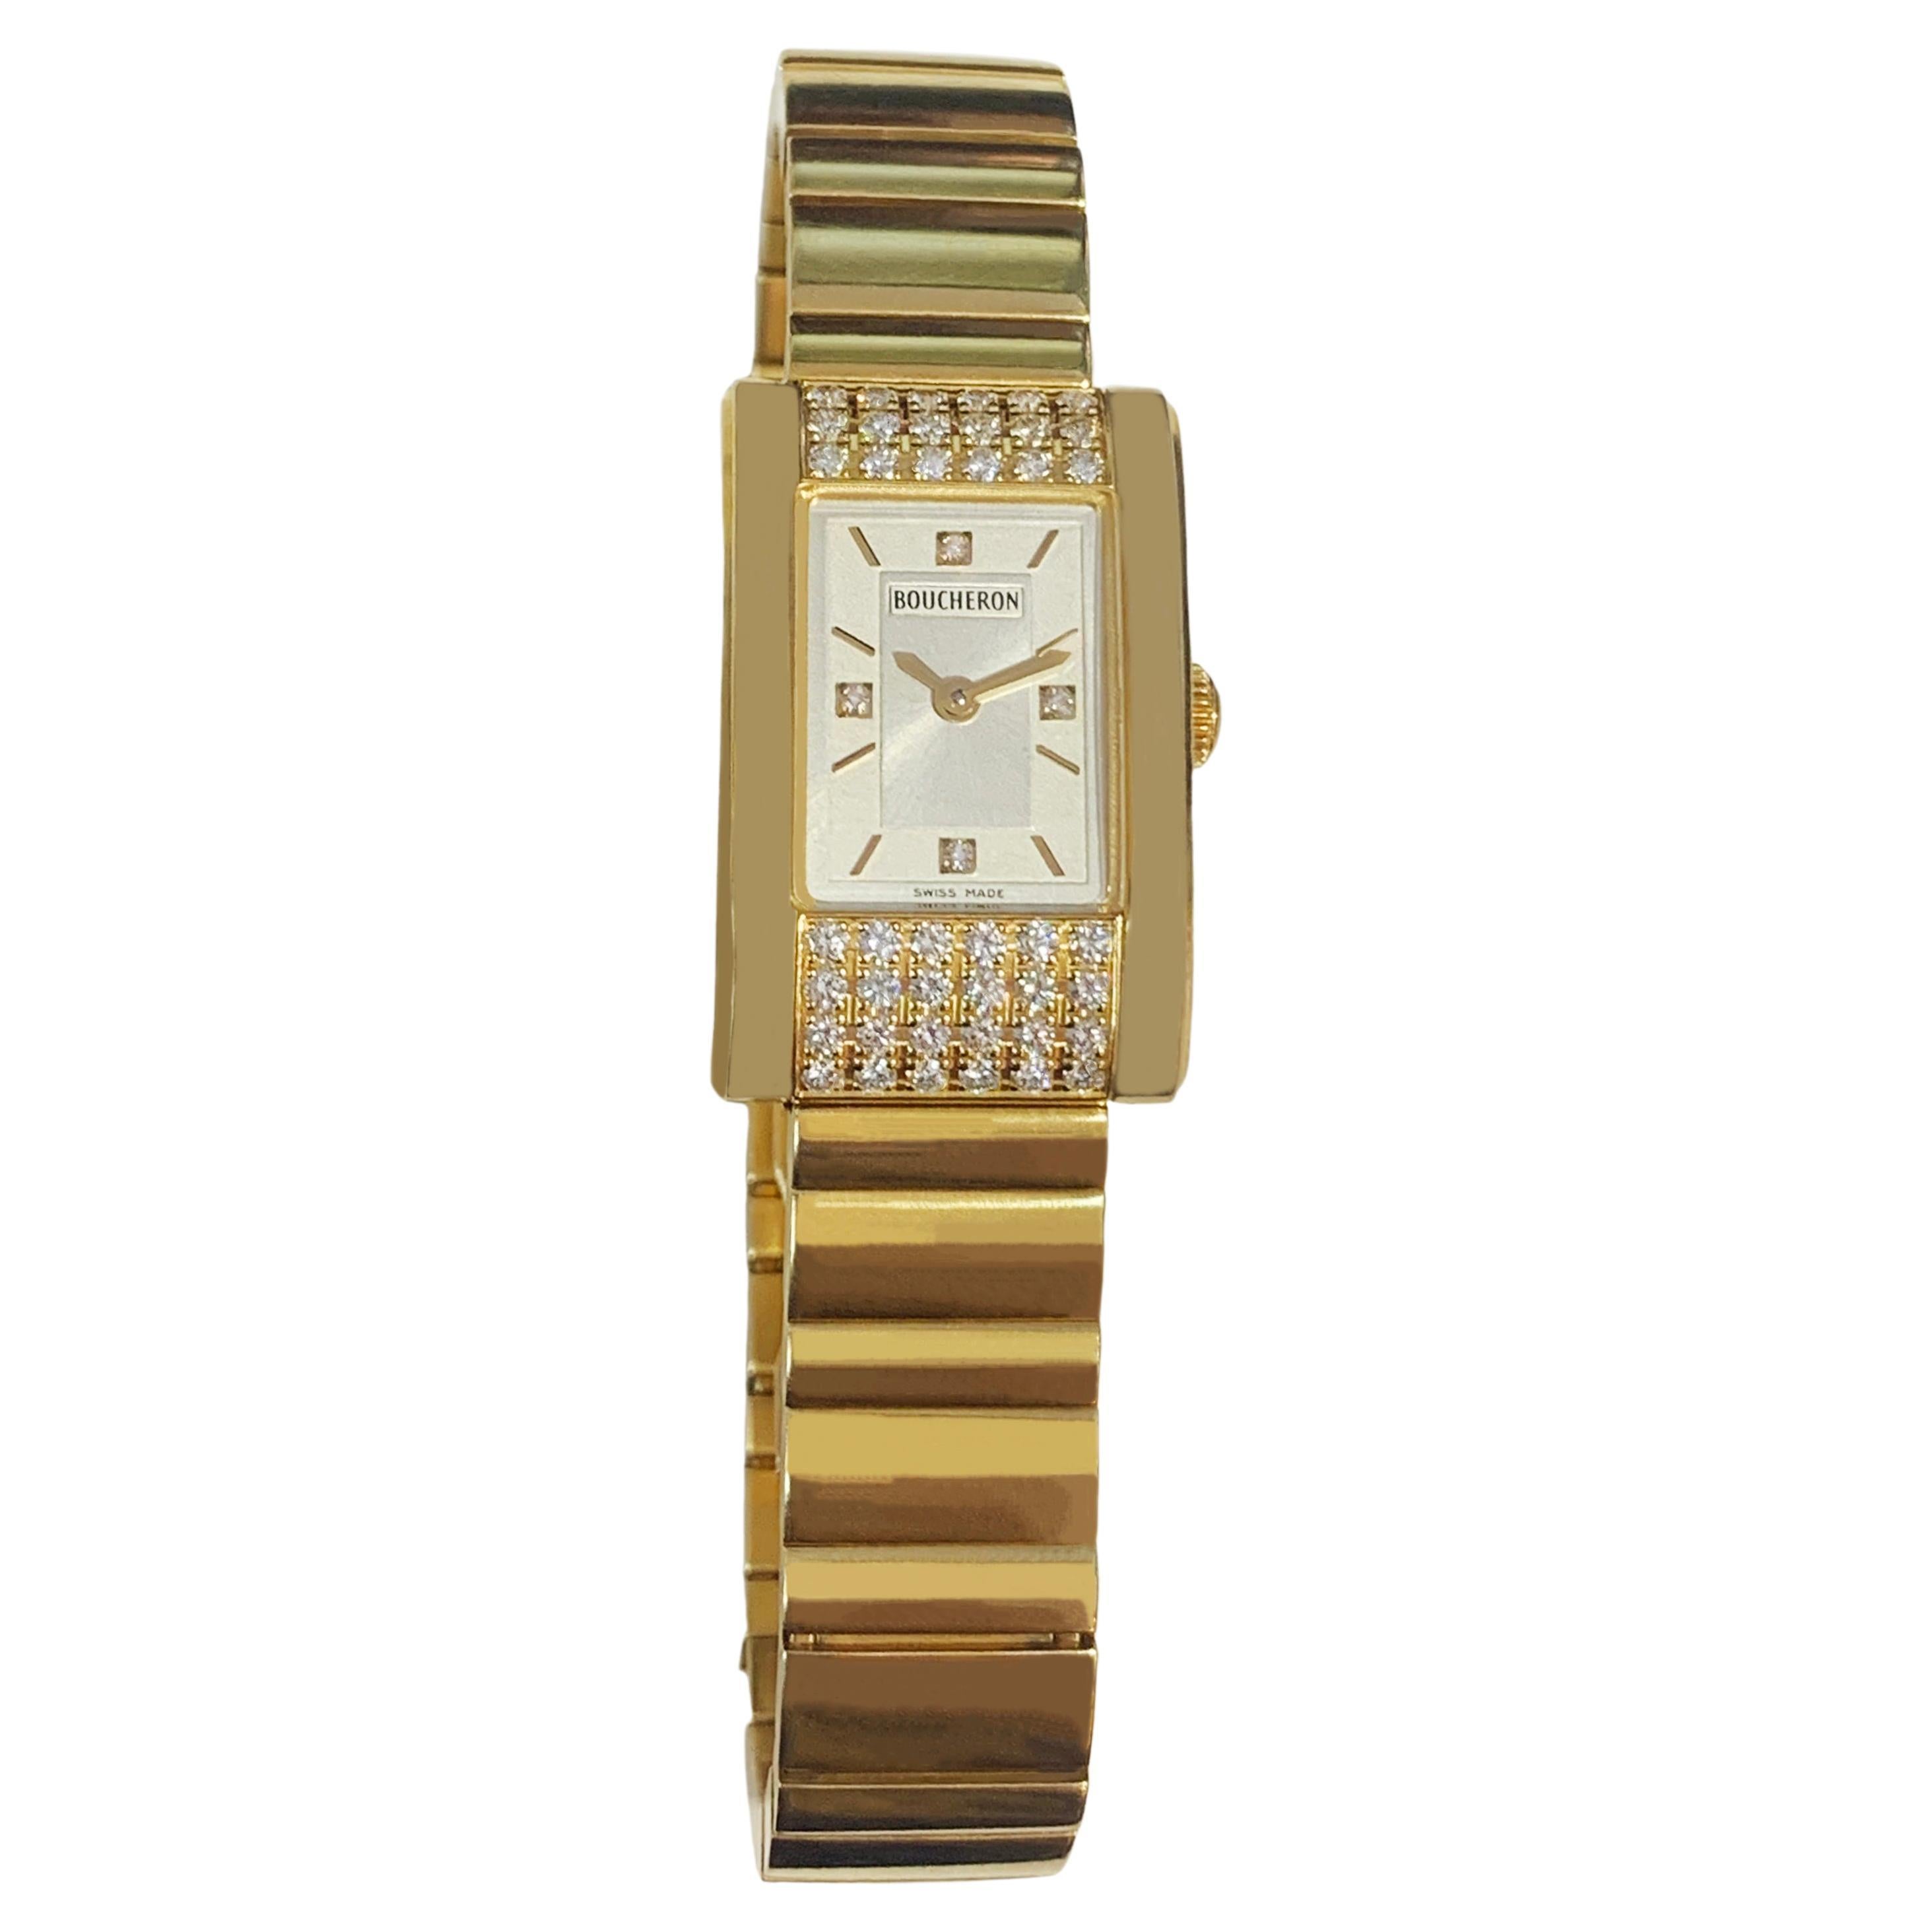 Boucheron 18k Yellow Gold Diamond Watch AL 439792 For Sale